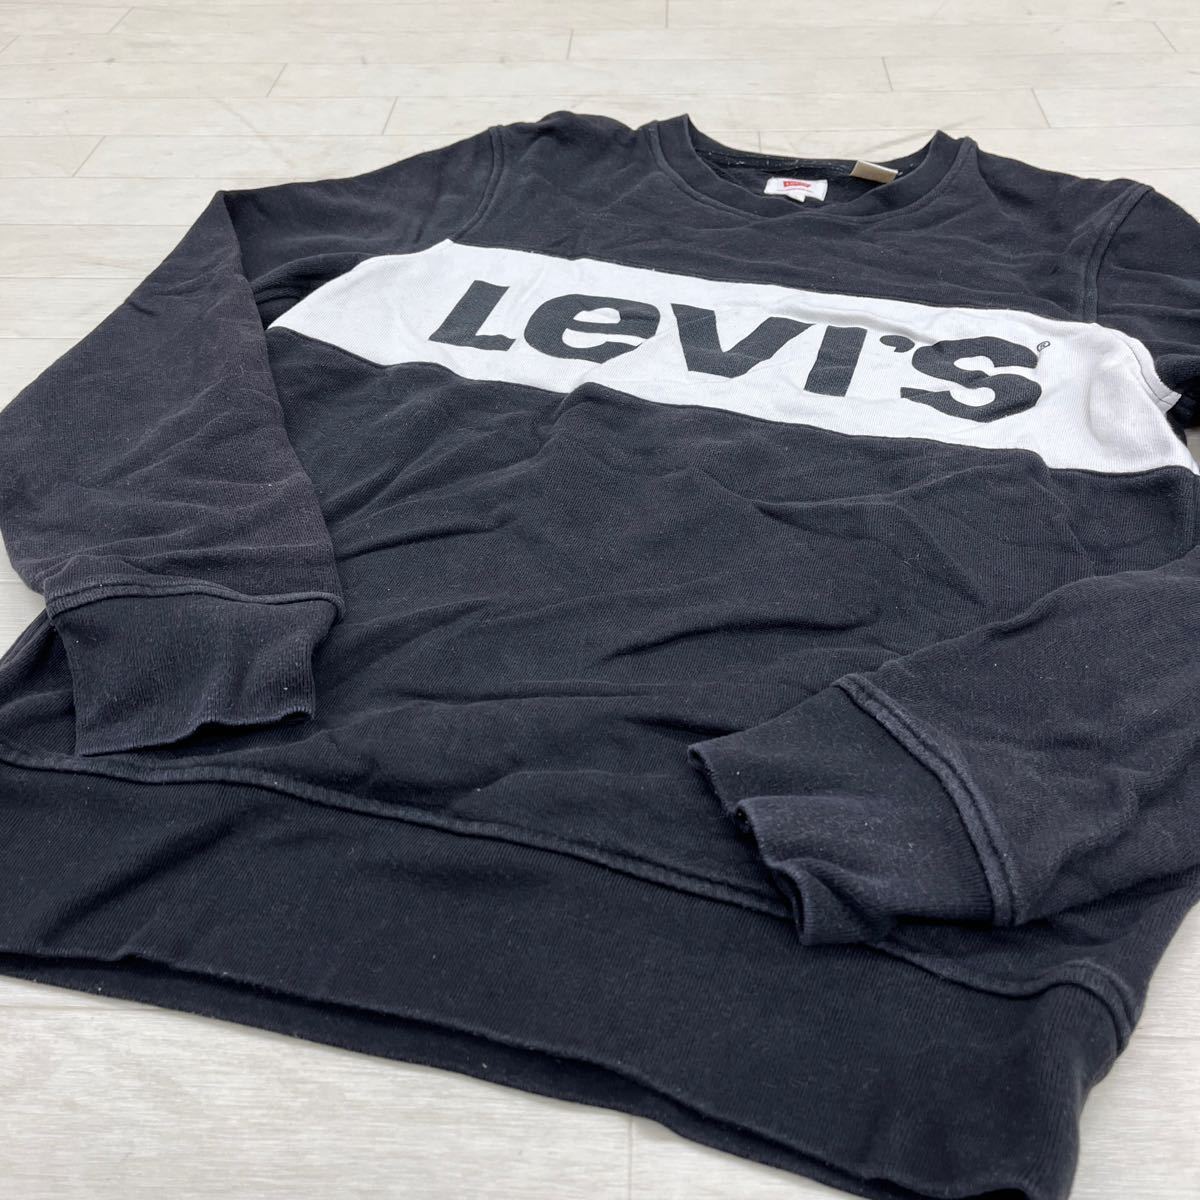 1369◎ Levi's リーバイス トップス スウェット トレーナー 裏起毛 長袖 クルーネック ビック ロゴ ブラック ホワイト メンズS_画像3